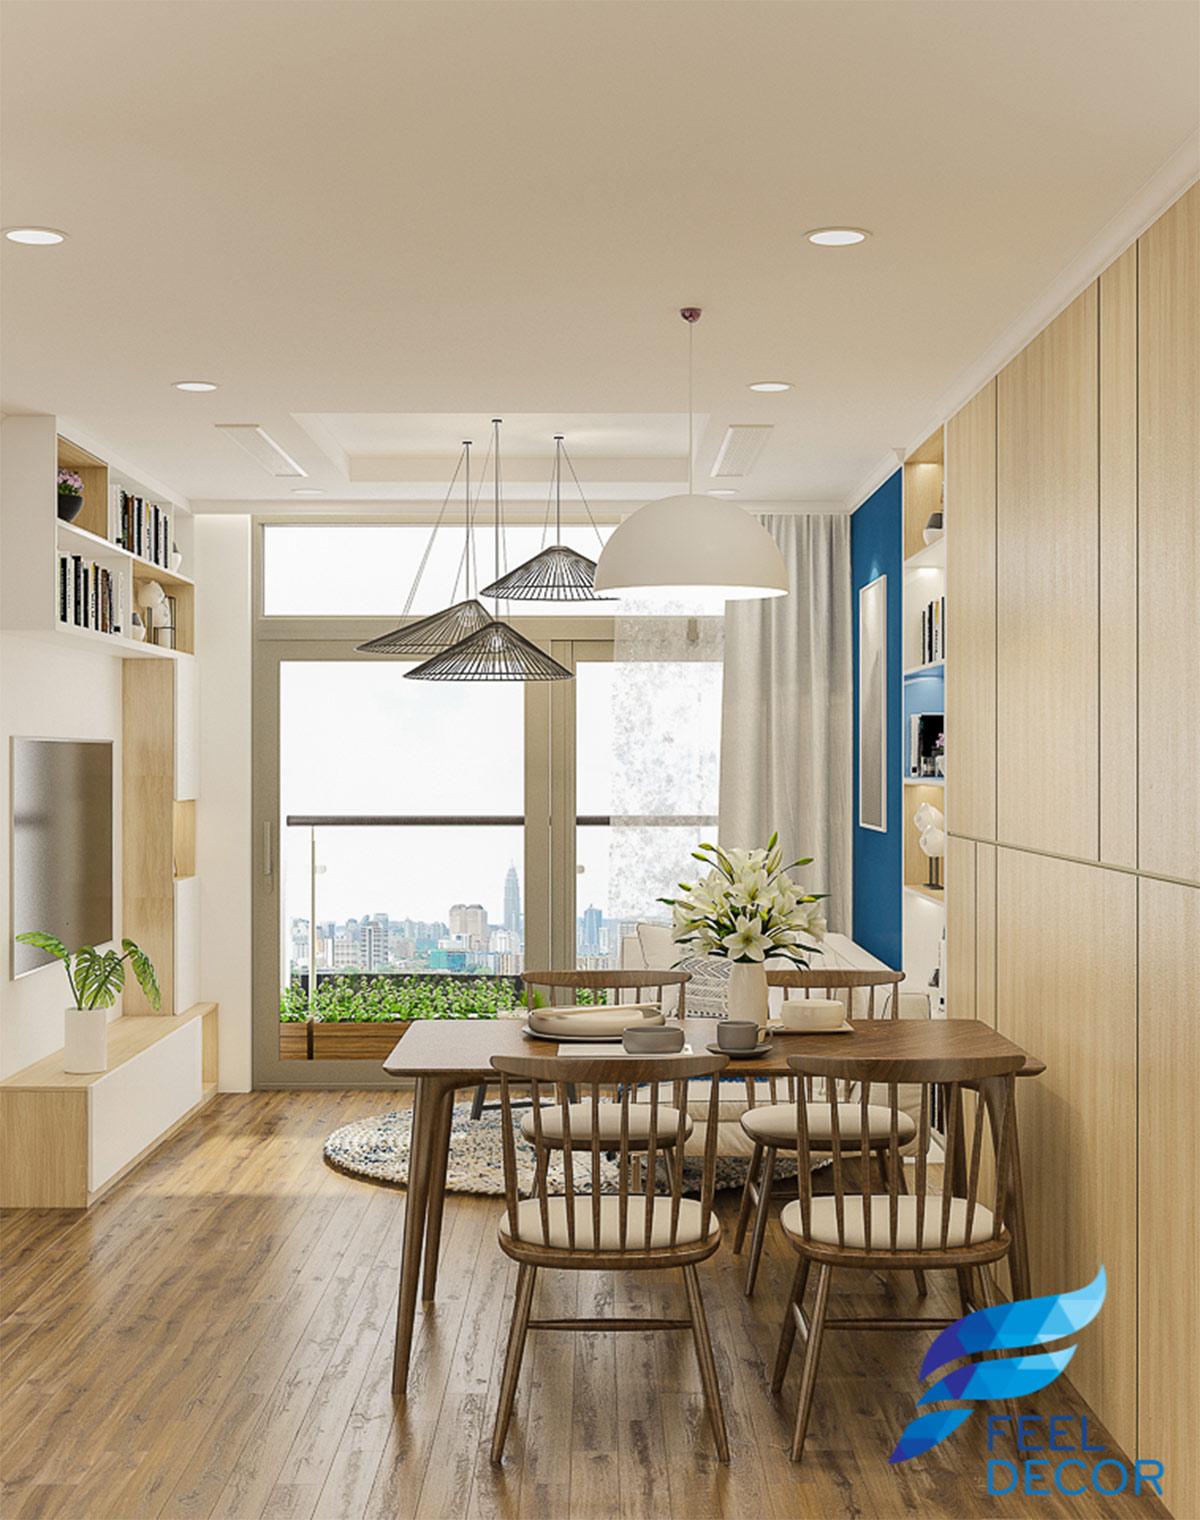 Thiết kế thi công nội thất căn hộ 69m2 chung cư Vinhomes Central Park – FD2818